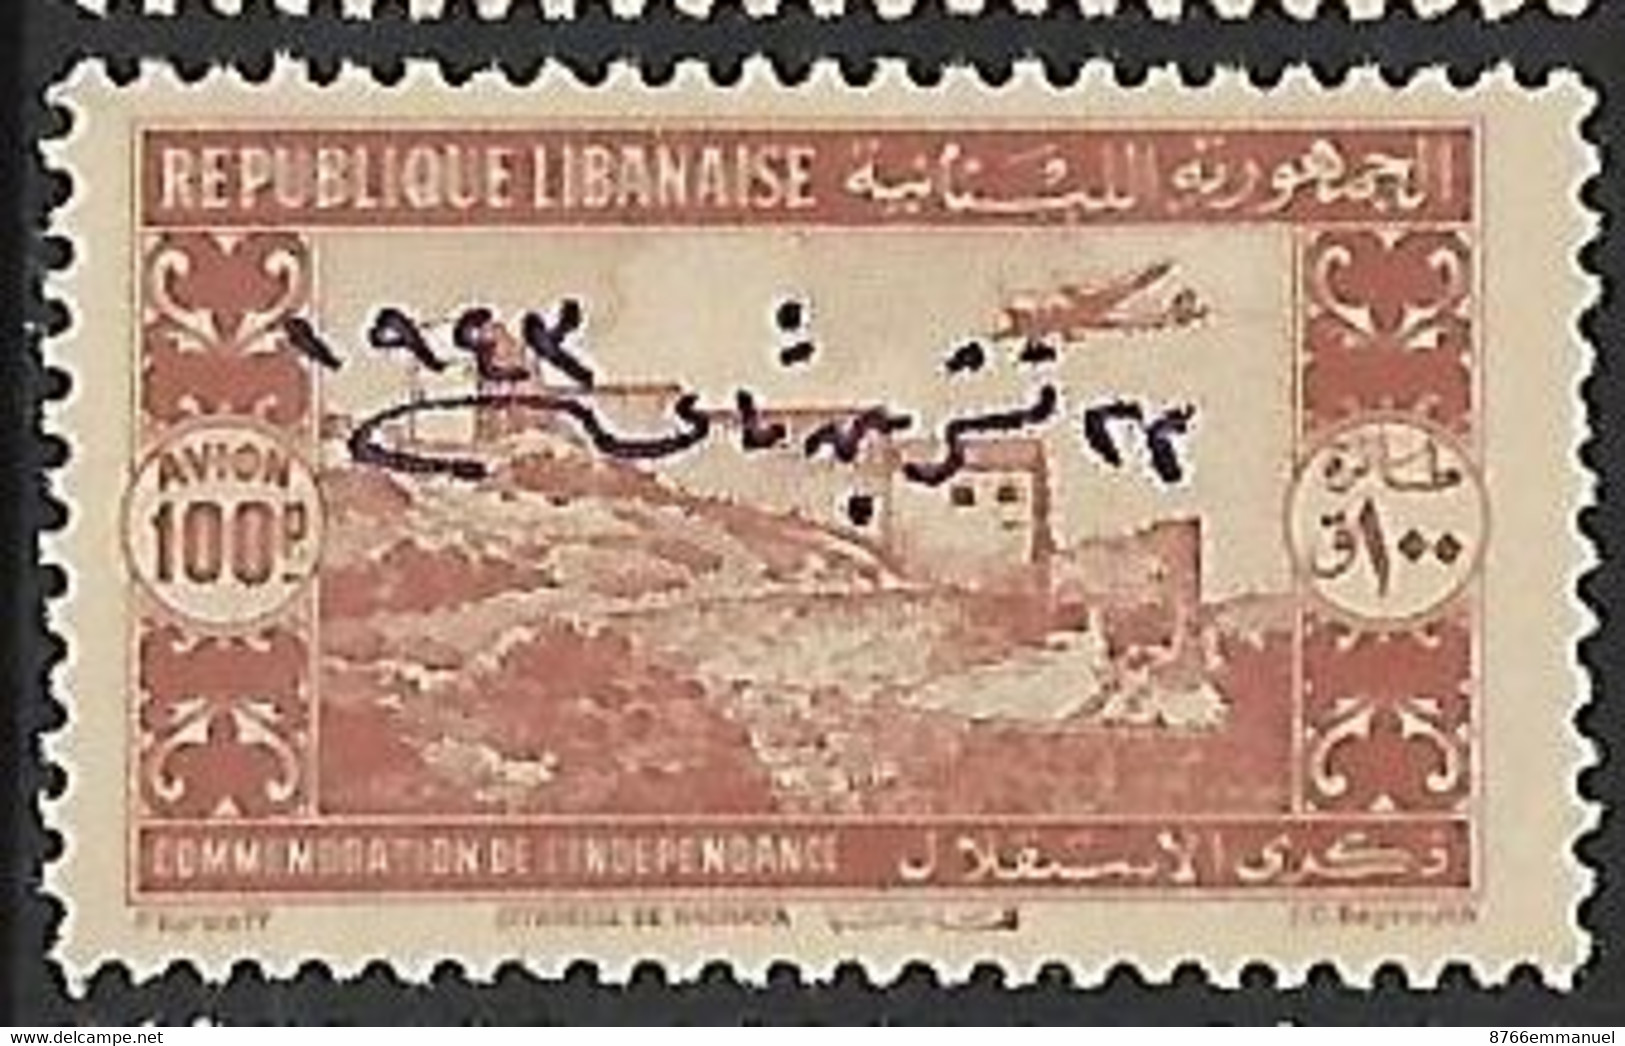 GRAND LIBAN AERIEN N°93 N* - Airmail